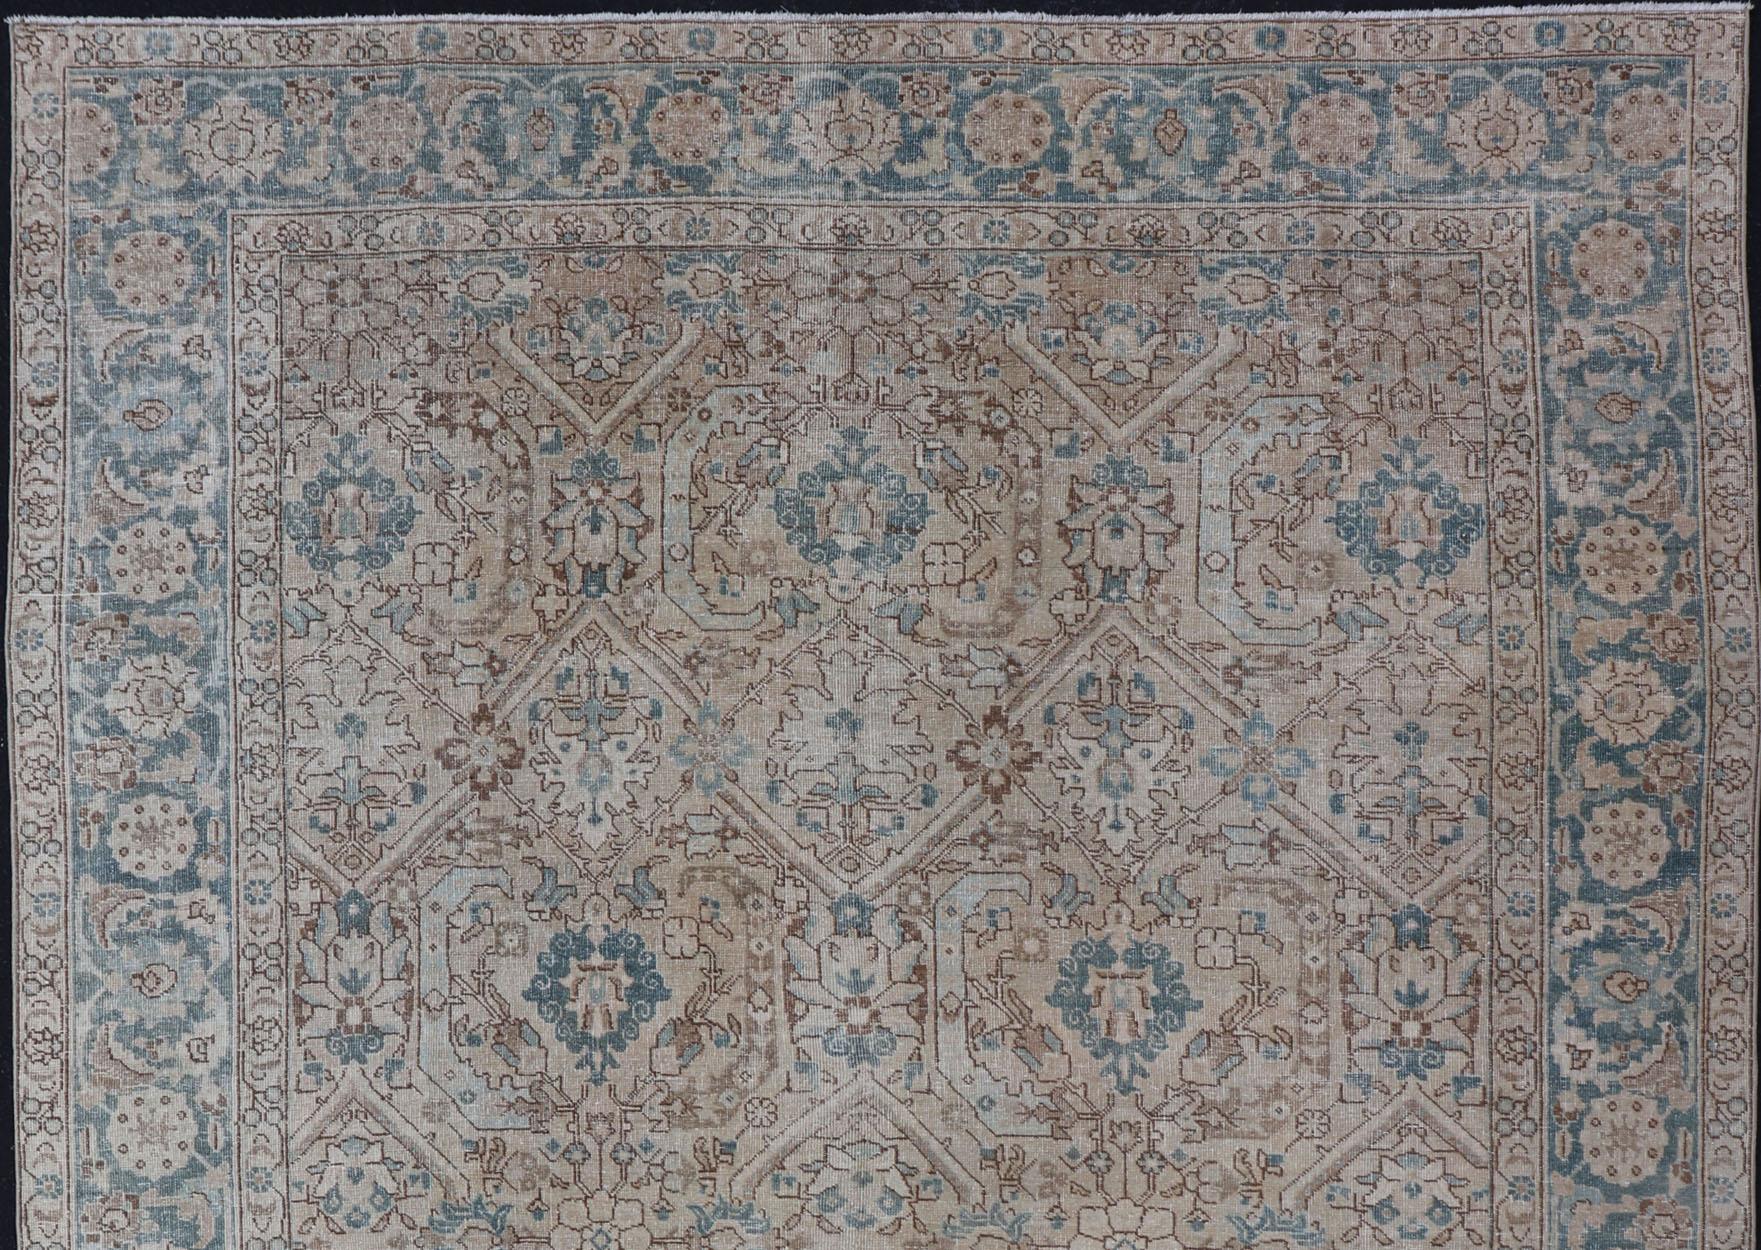 Hellbrauner Hintergrund Persischer Täbriz Teppich mit geometrischem Muster, Teppich ZIR-65-KV-11, Herkunftsland / Typ: Iran / Täbris, um 1930.

Dieser prächtige persische Täbriz-Teppich aus dem frühen 20. Jahrhundert zeigt ein wunderschönes,